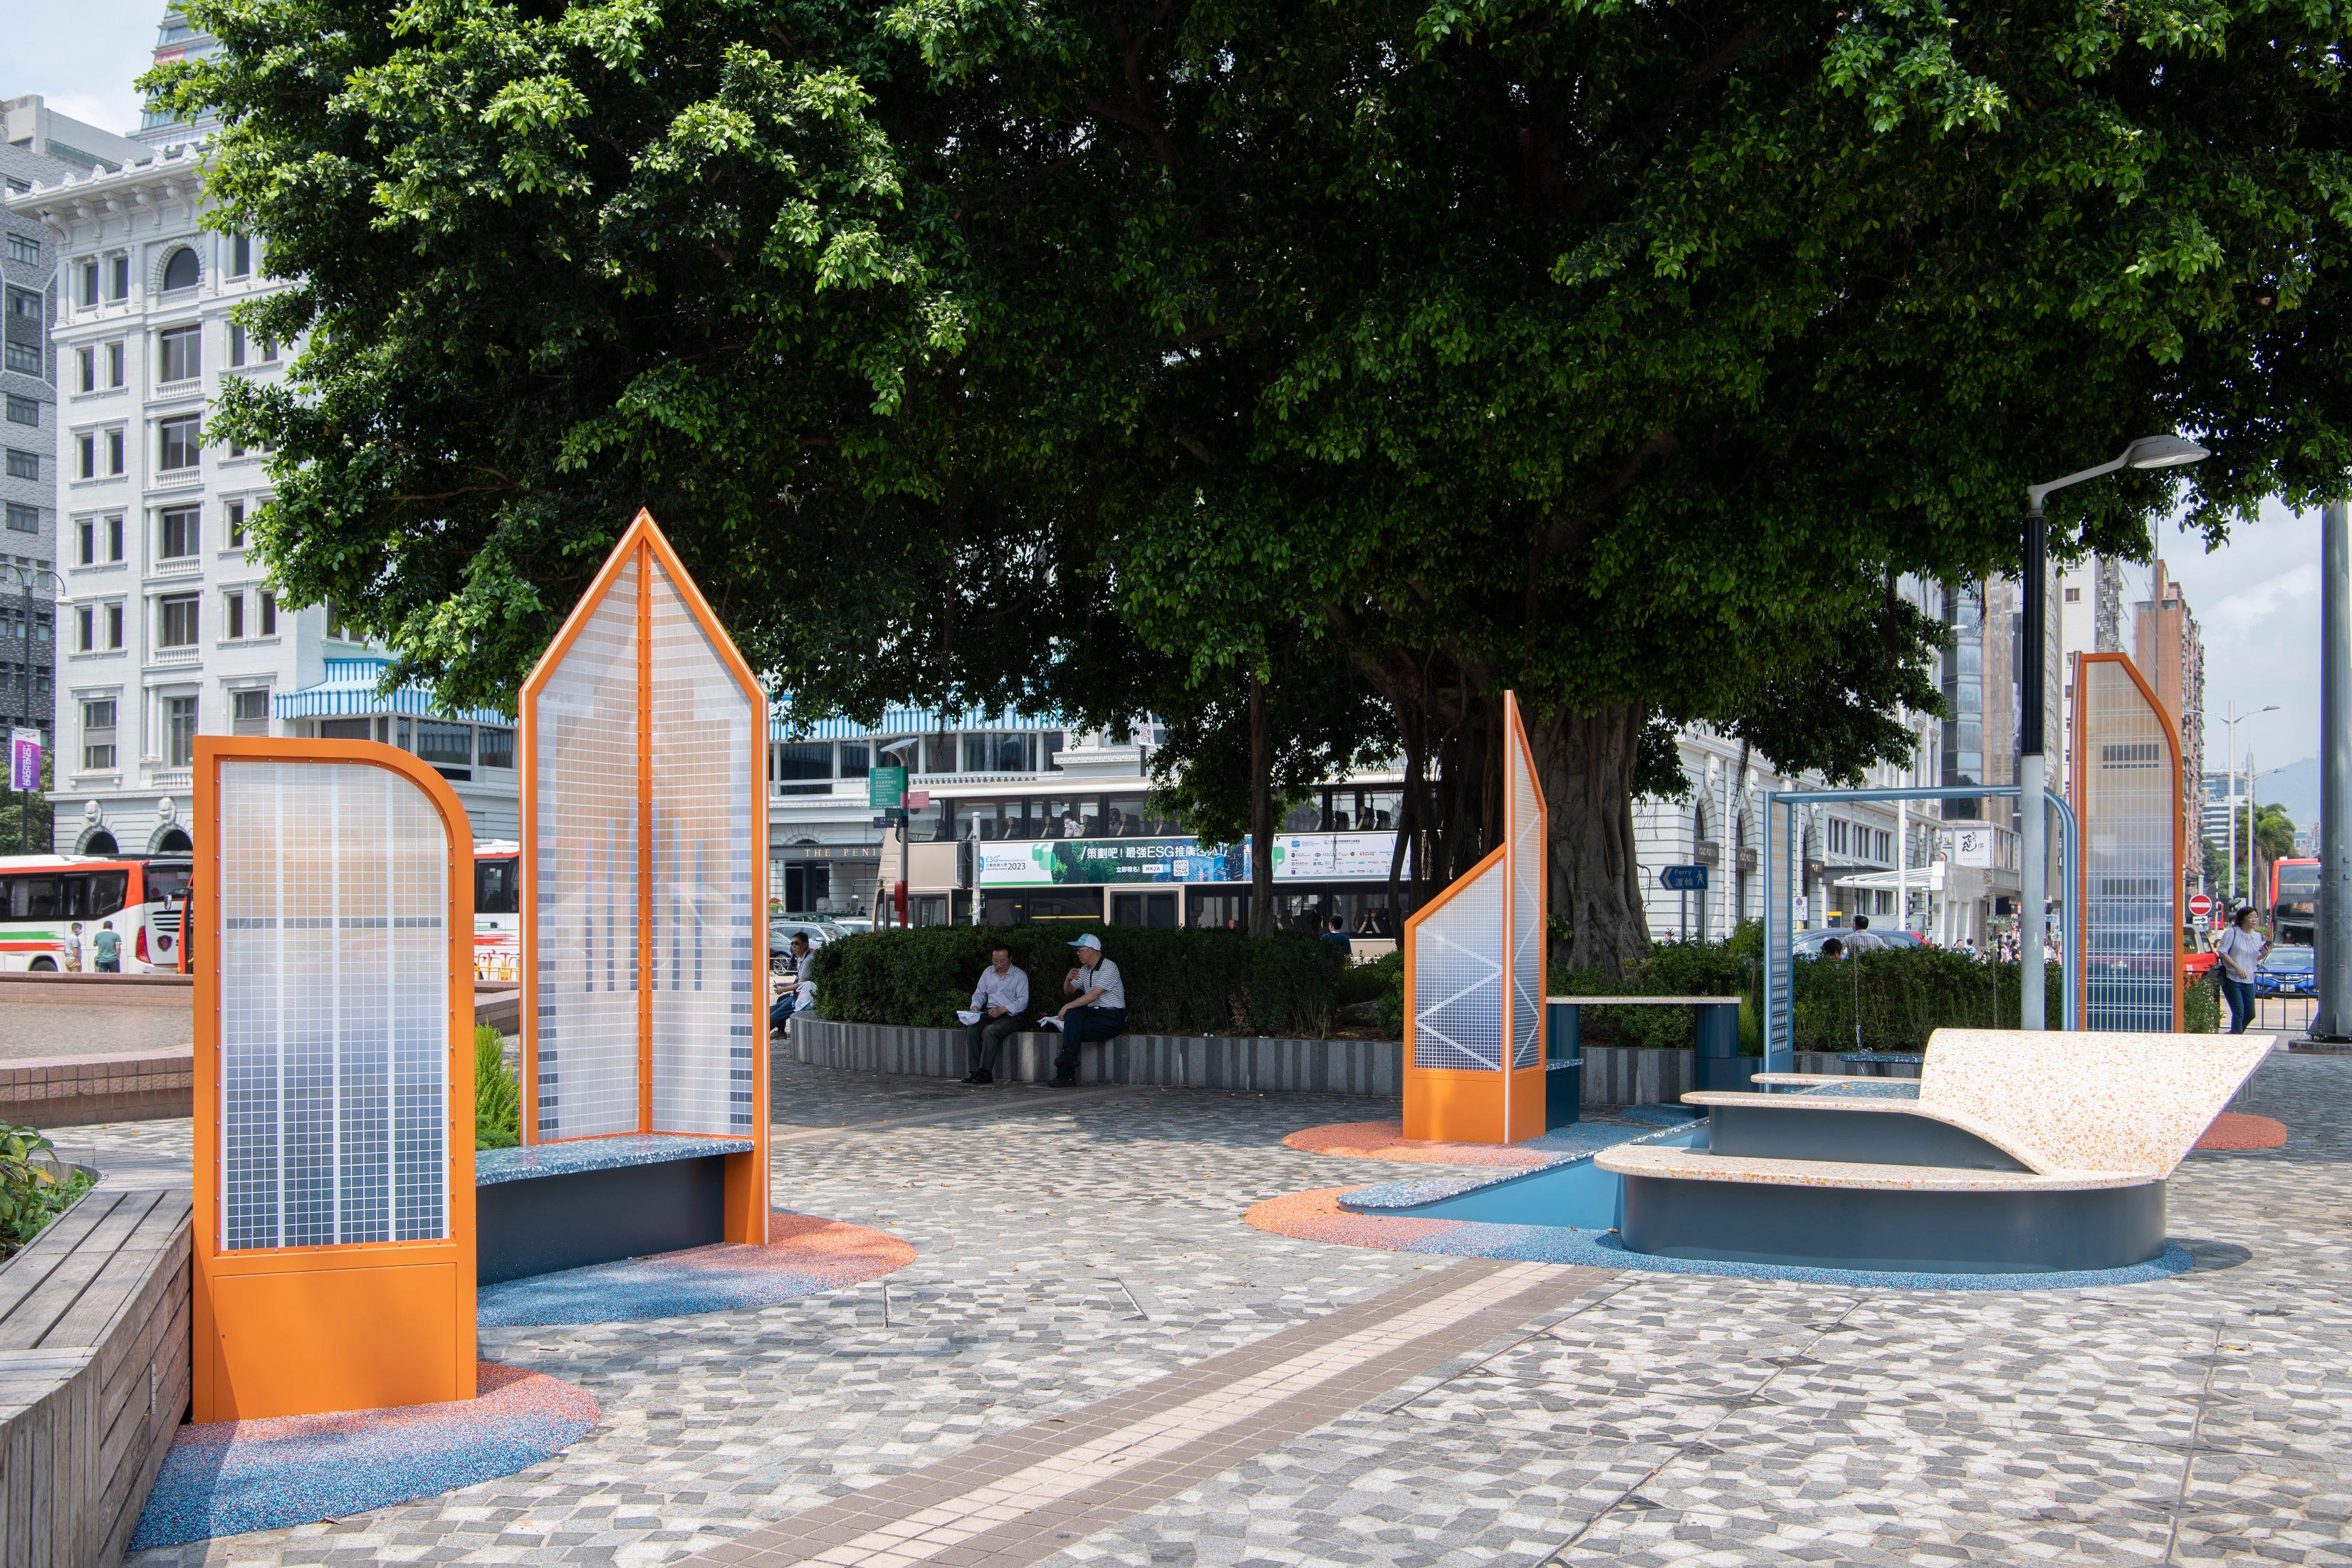 香港艺术馆最新展览「游•游」，邀请两位香港艺术家分别创作两组大型户外装置作品，于艺术馆前方的艺术广场展出，让公众重新想像毗邻的海港。艺术家兼建筑师蔡伟权将维港两岸的地标建筑缩小成《人游于港》作品，将艺术广场变为可供游人休憩耍乐的公共空间。